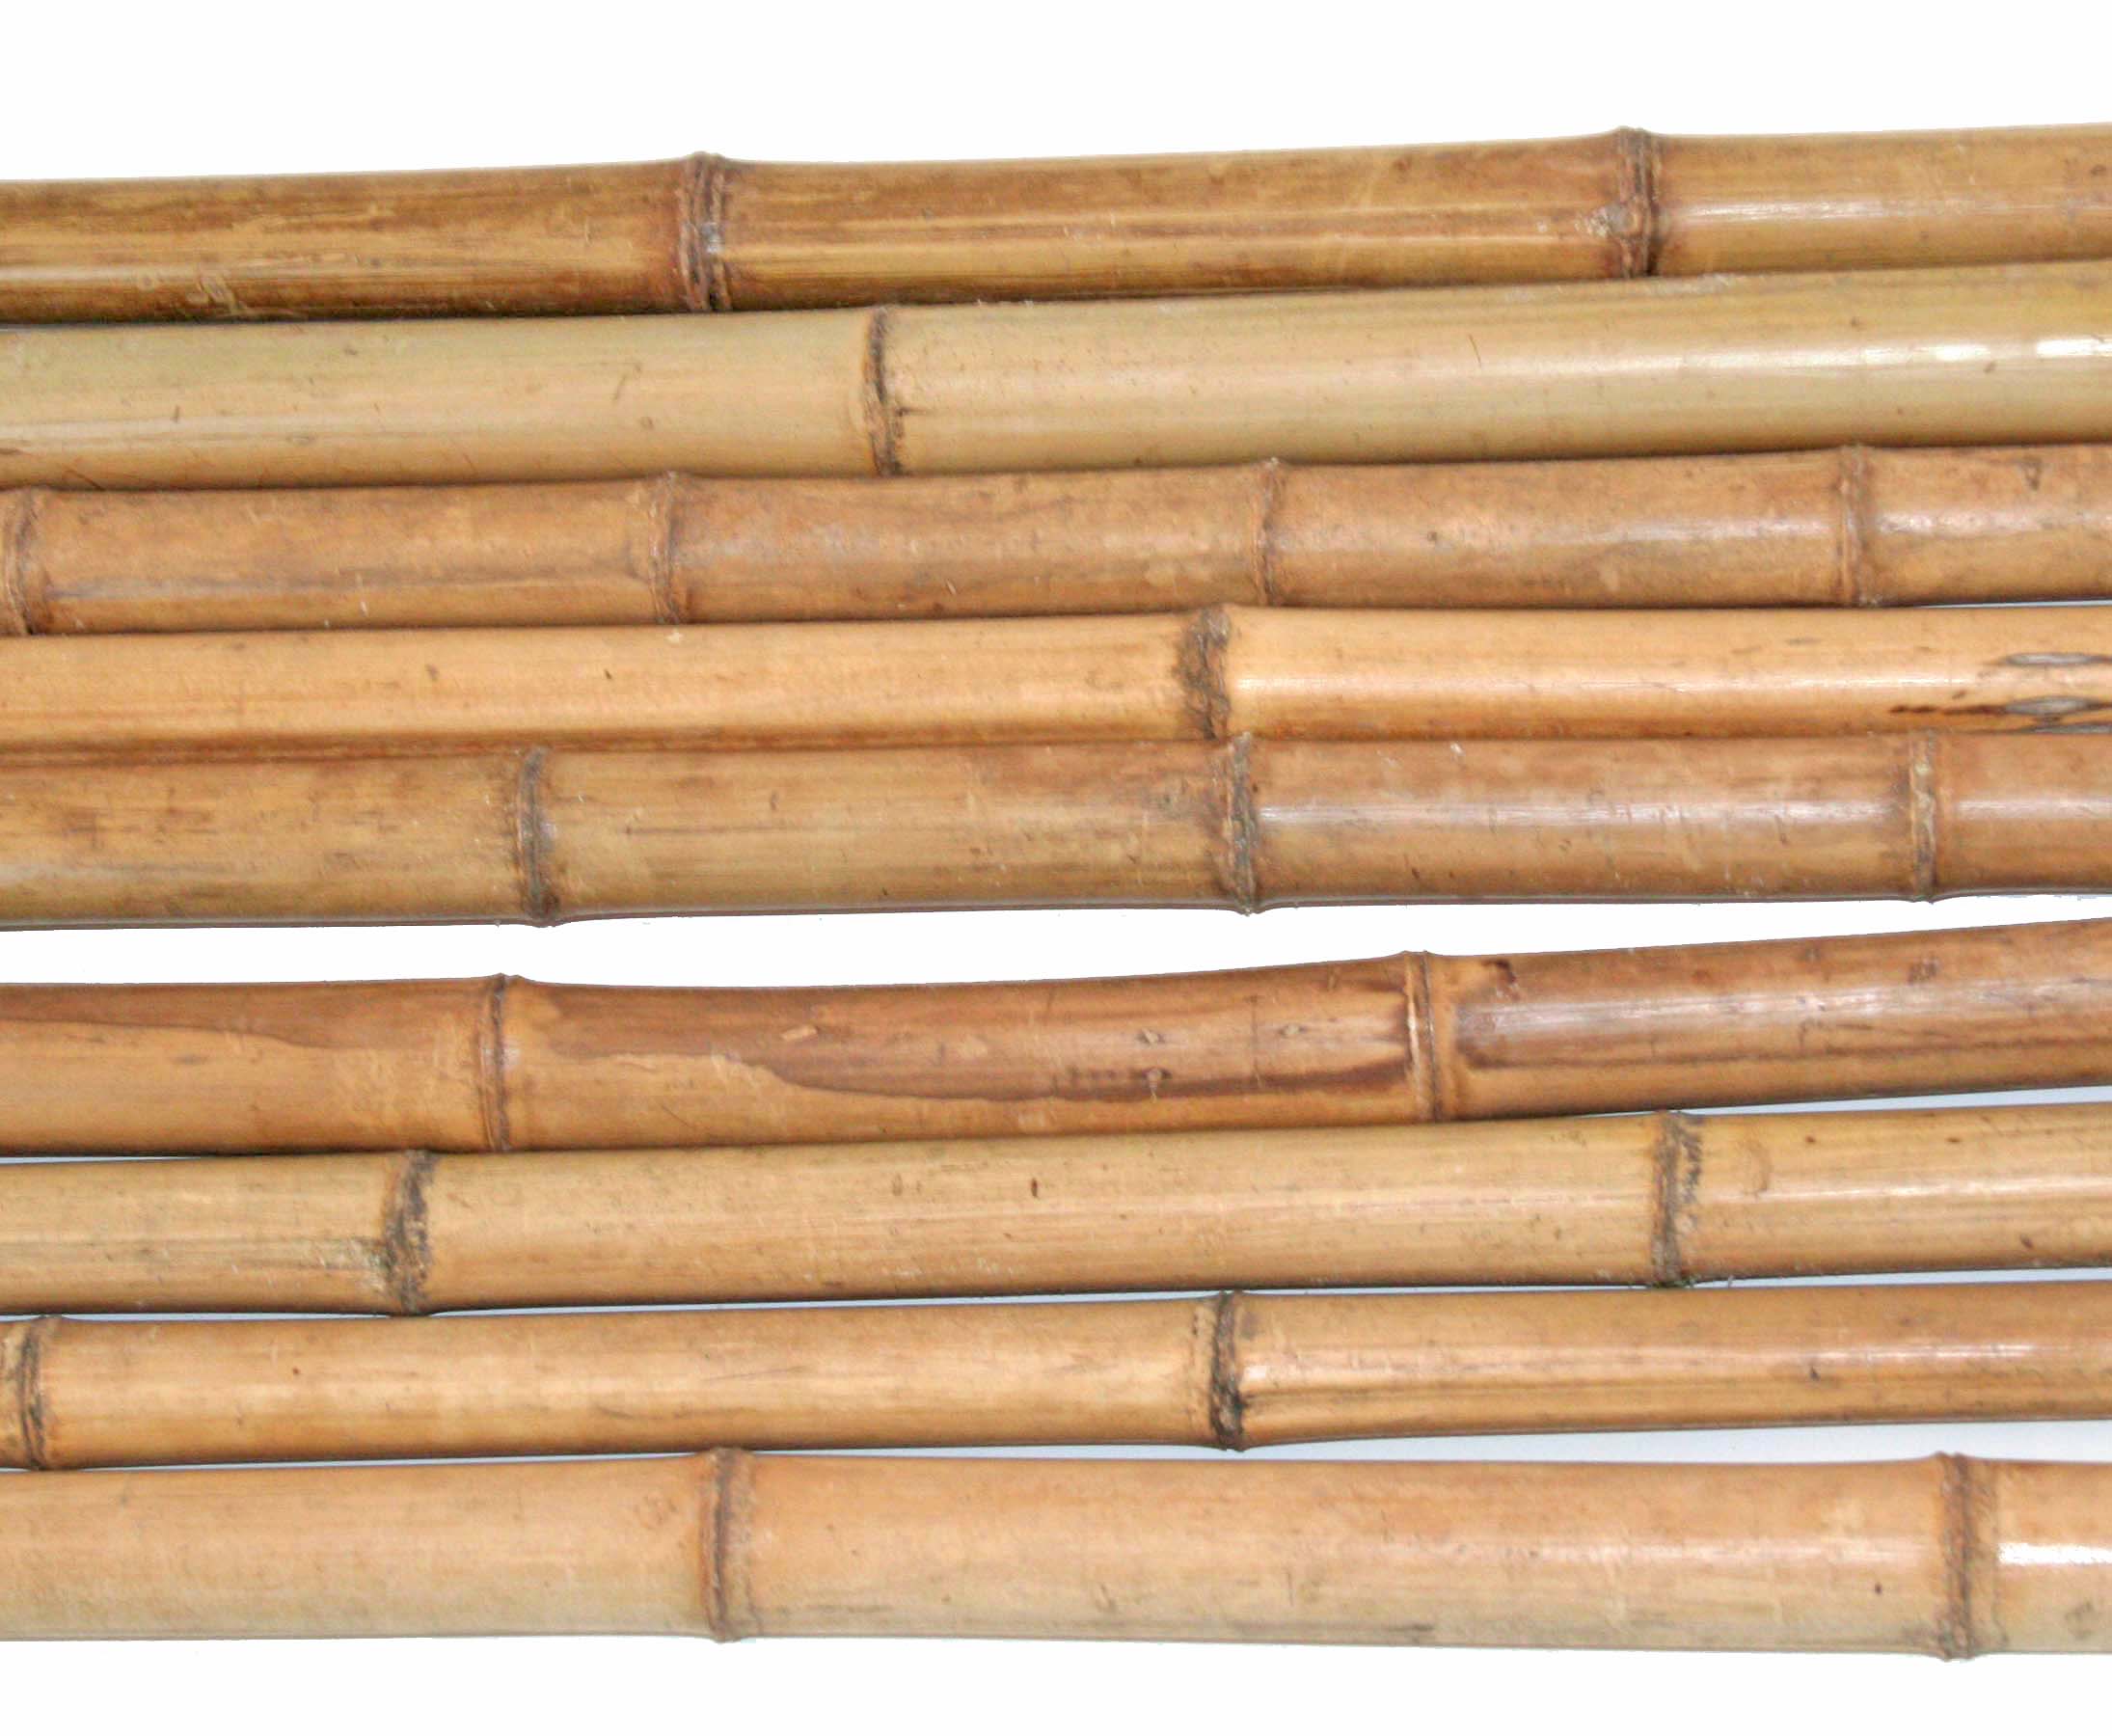 Bambusstangen Bambus Bambusrohre Bambuslatte Bambusstange 30 Stk 150 cm Ø 3-4 cm 